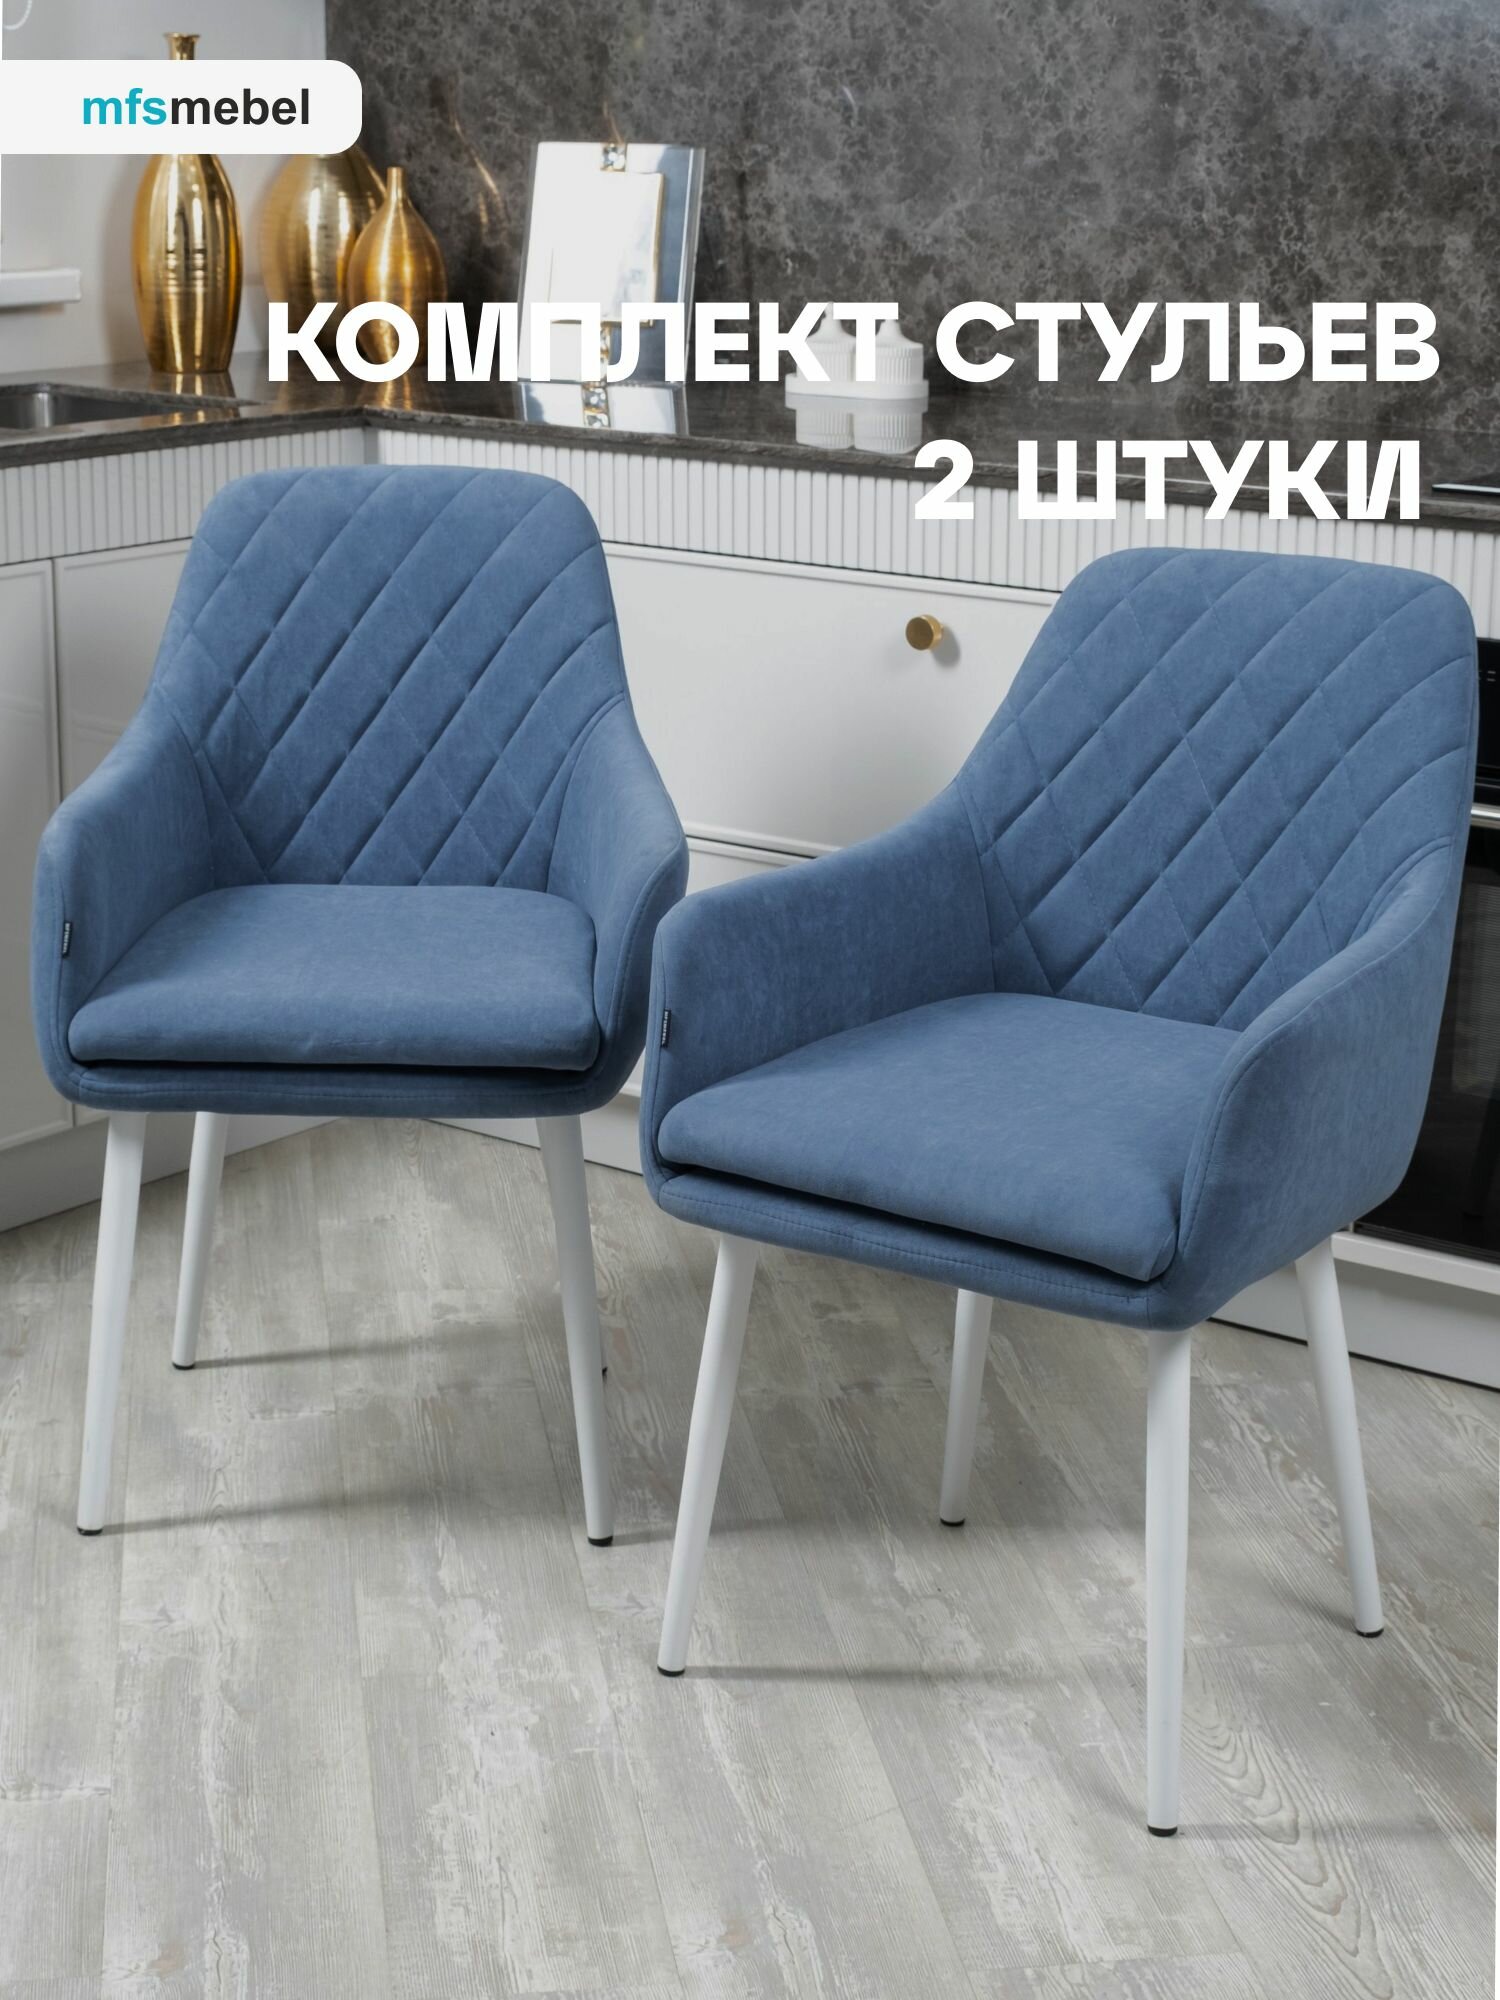 Комплект стульев для кухни Ар-Деко светло-синие с белыми ногами, стулья кухонные 2 штуки